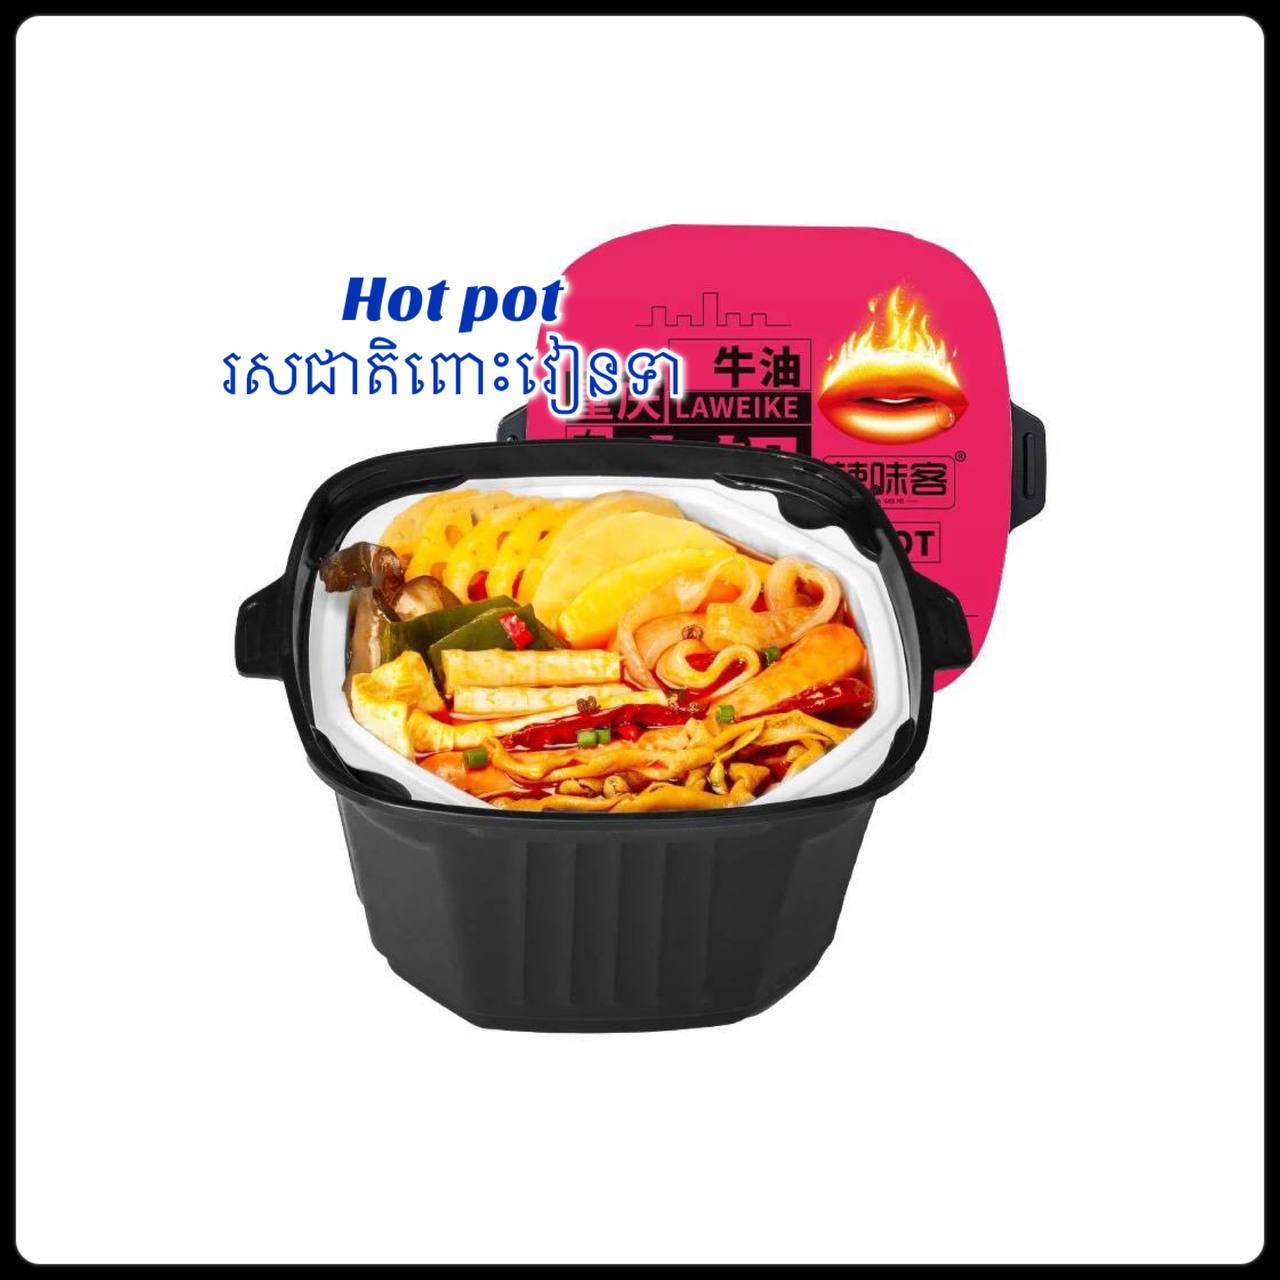 海底捞HDL Instant Hot Pot With Beef Trip 435G — Daily Market Groceries